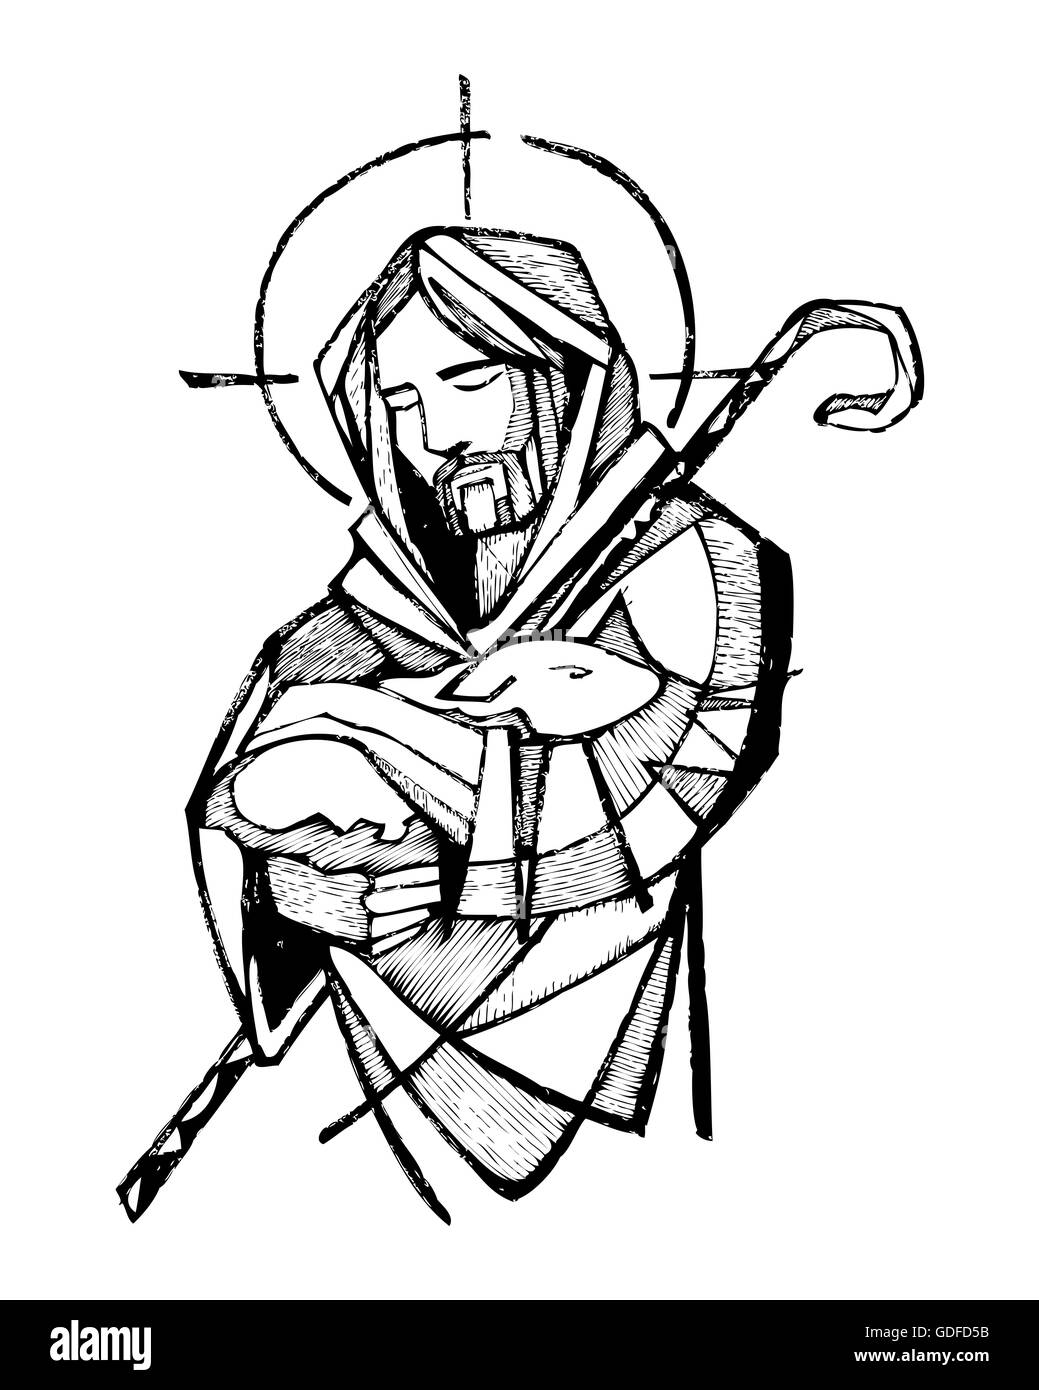 Disegnata a mano illustrazione vettoriale o di disegno di Gesù Cristo come Buon Pastore Foto Stock